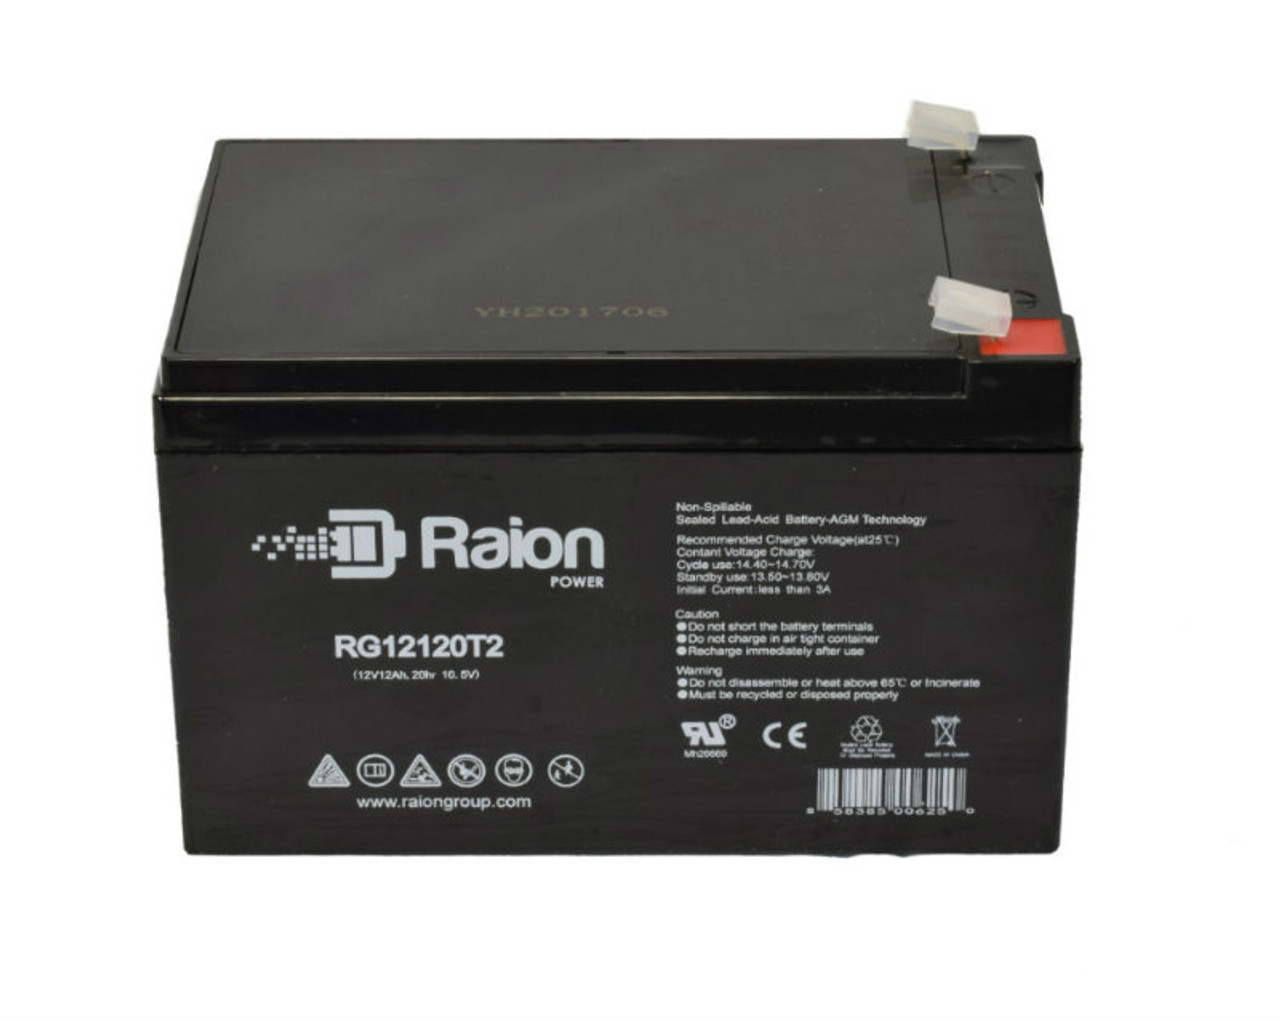 Raion Power RG12120T2 SLA Battery for OUTDO OT12-12